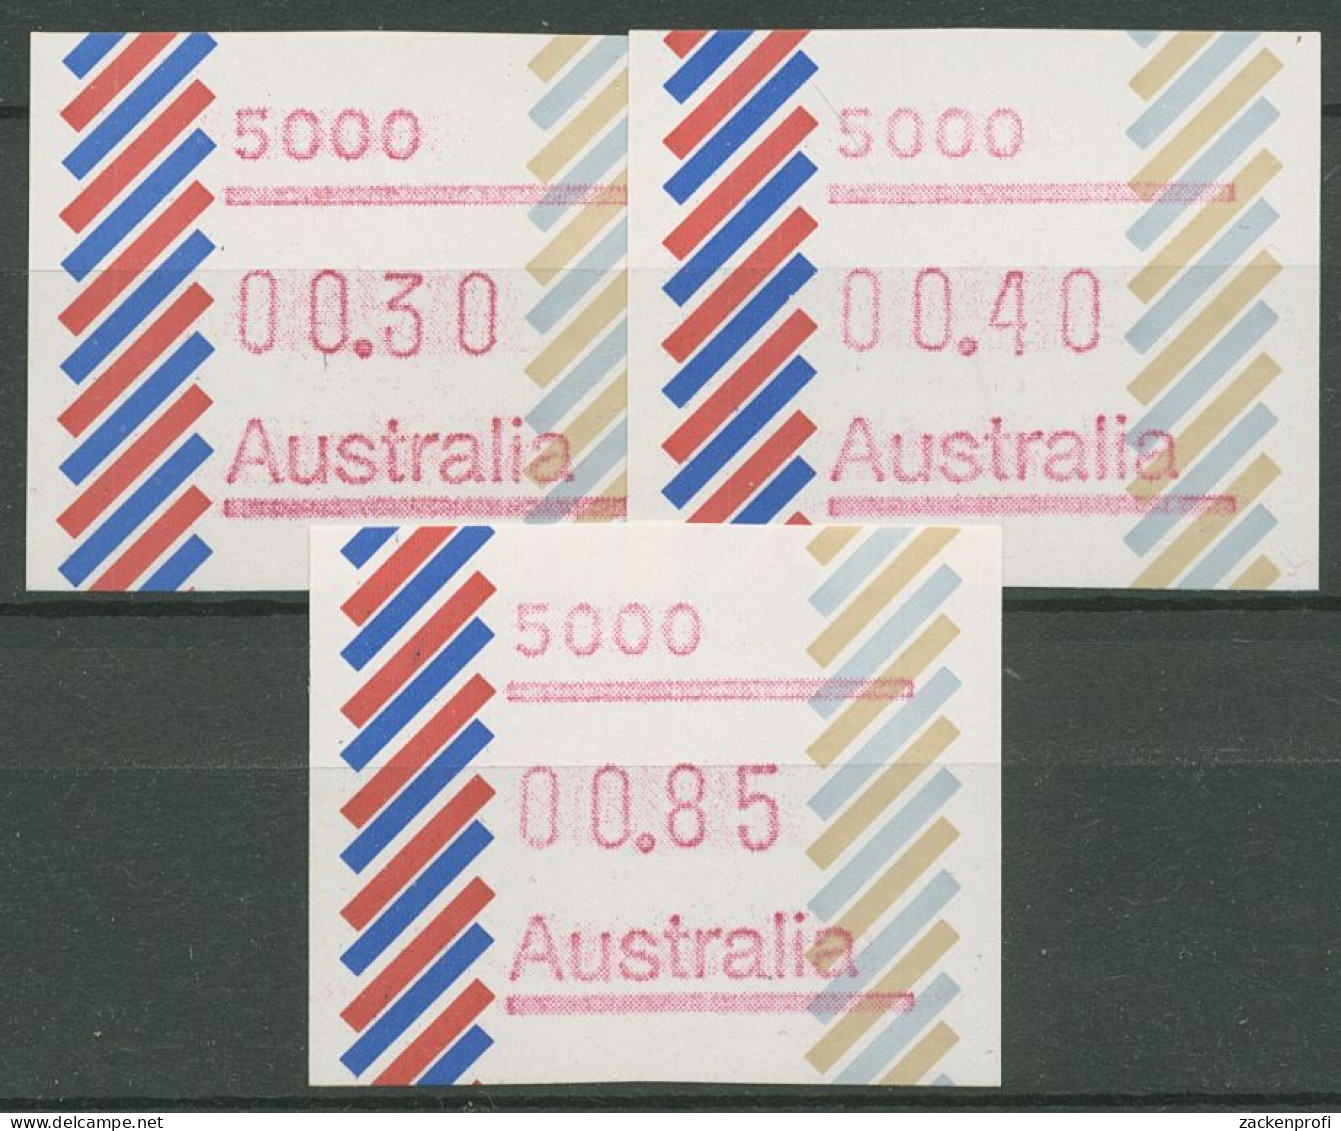 Australien 1984 Balken Tastensatz Automatenmarke 1 S1, 5000 Postfrisch - Viñetas De Franqueo [ATM]